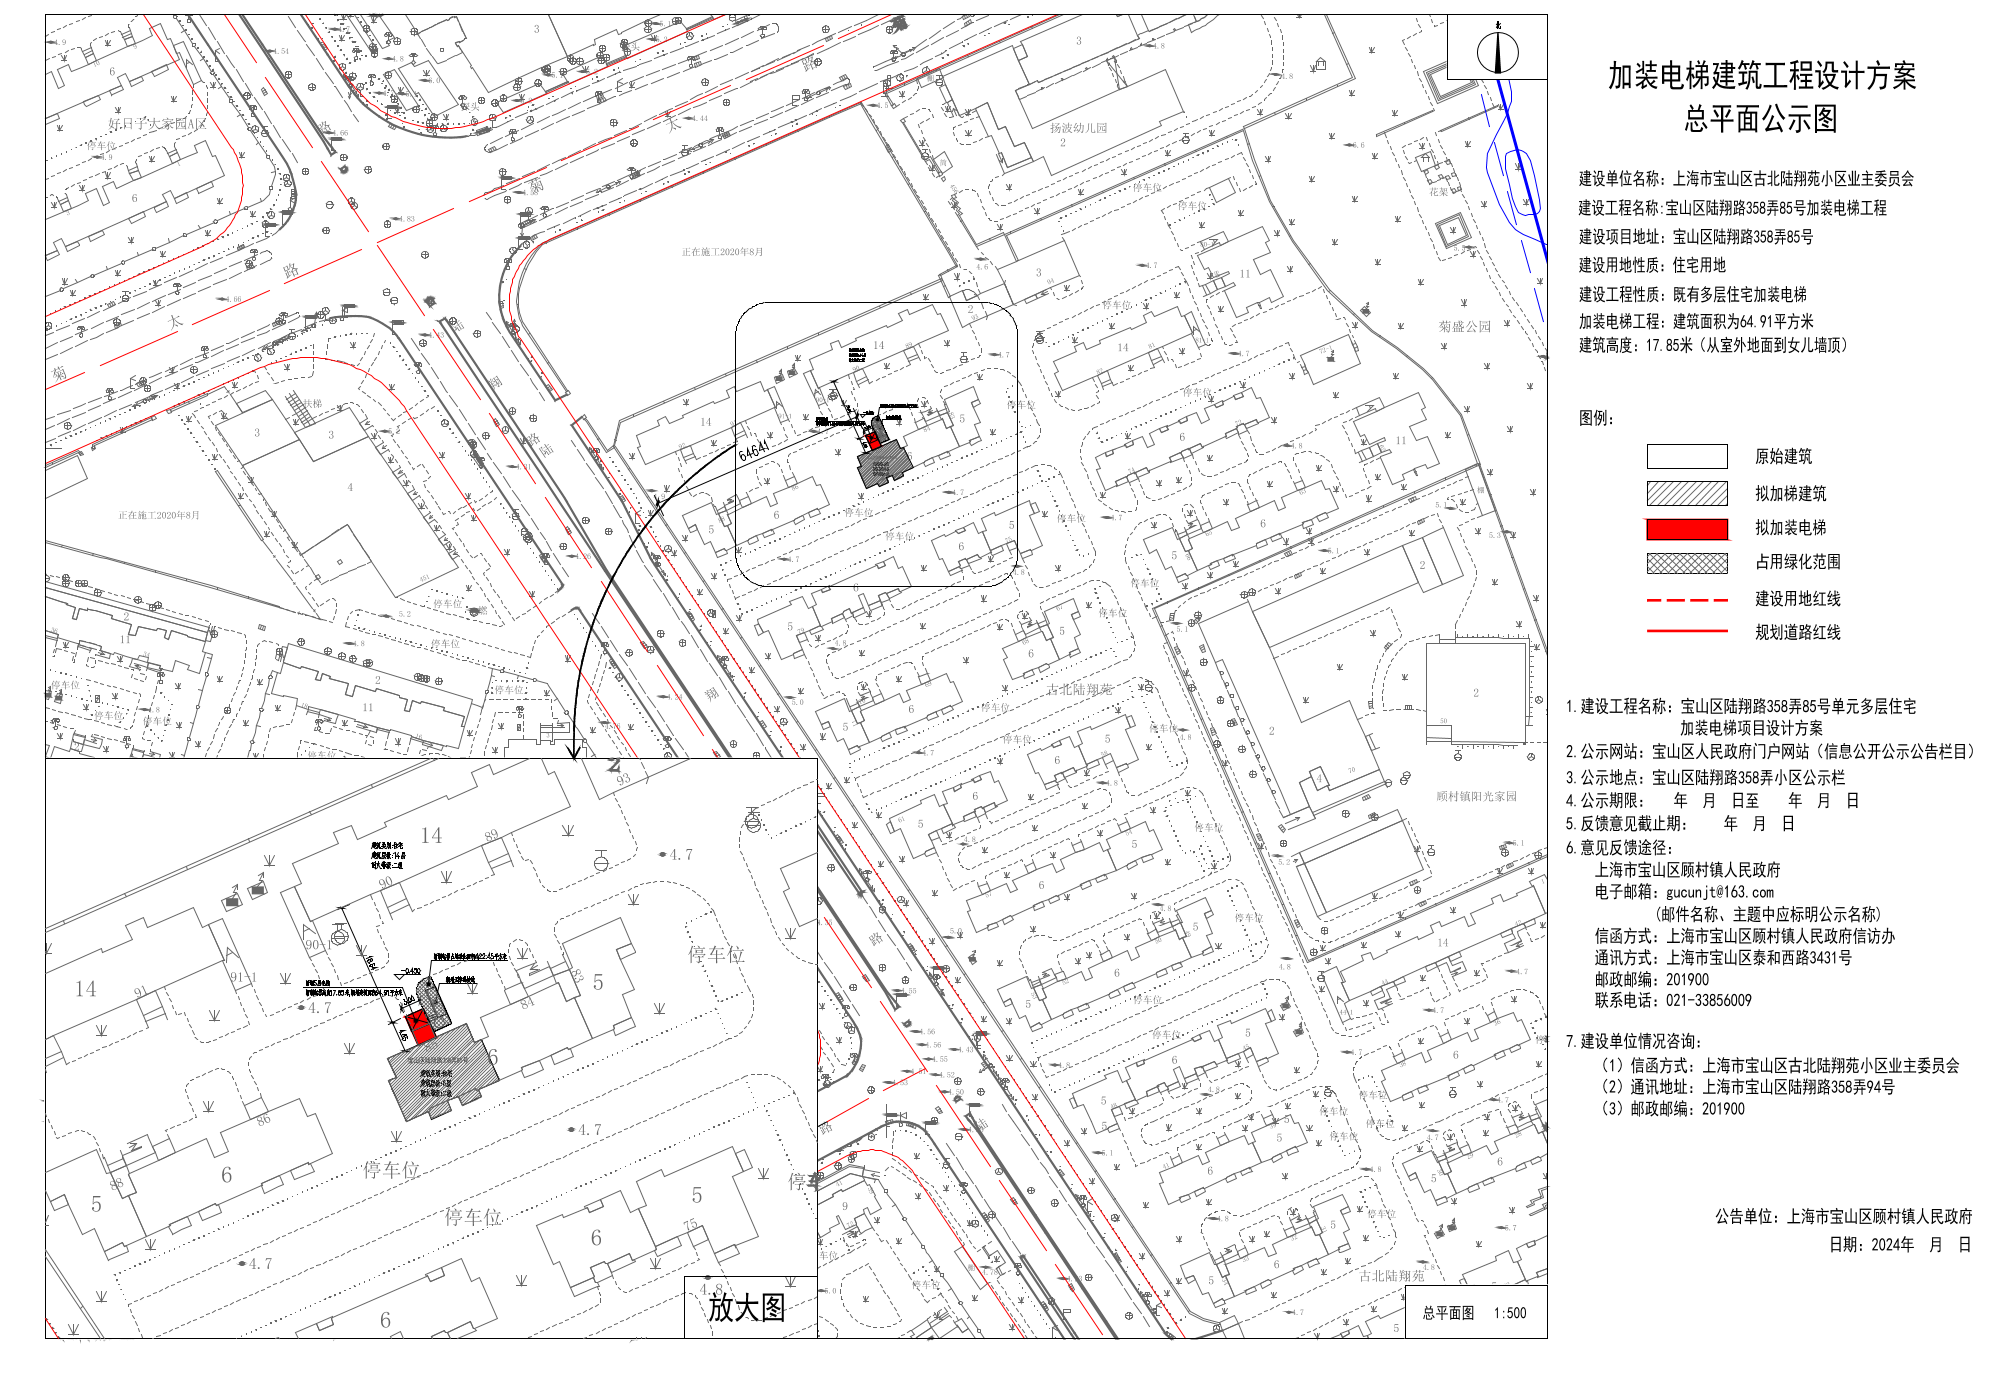 上海市宝山区陆翔路358弄85号既有多层住宅加装电梯工程设计方案公示公告.pdf